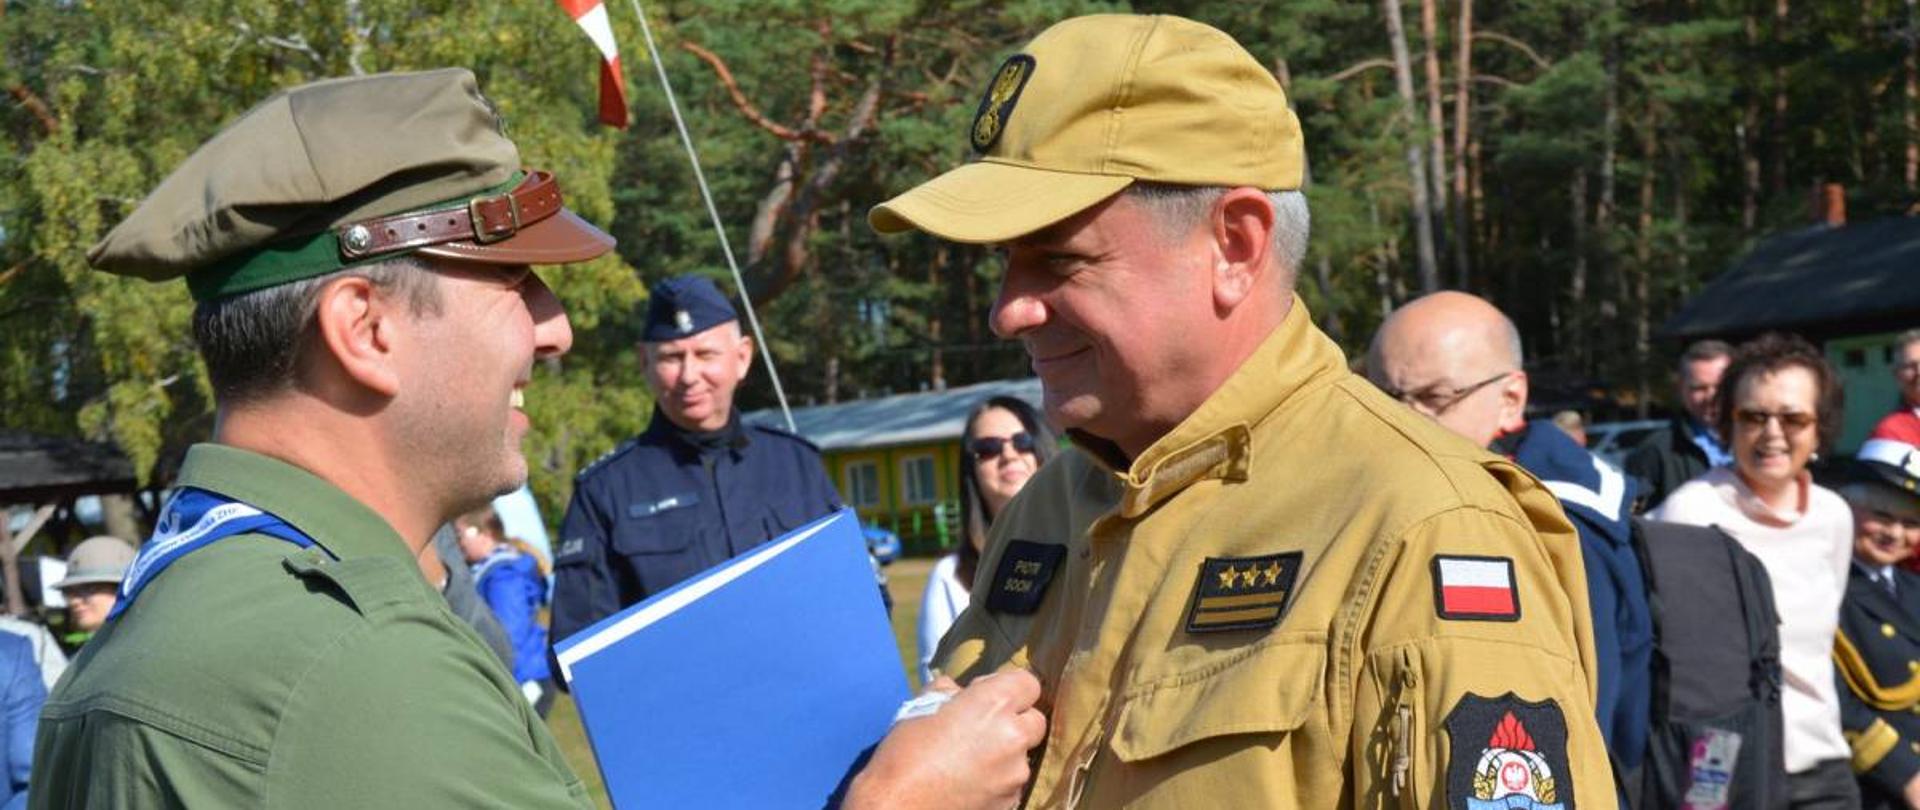 Komendant Chorągwi Gdańskiej przypina medal pomorskiemu komendantowi Państwowej Straży Pożarnej.